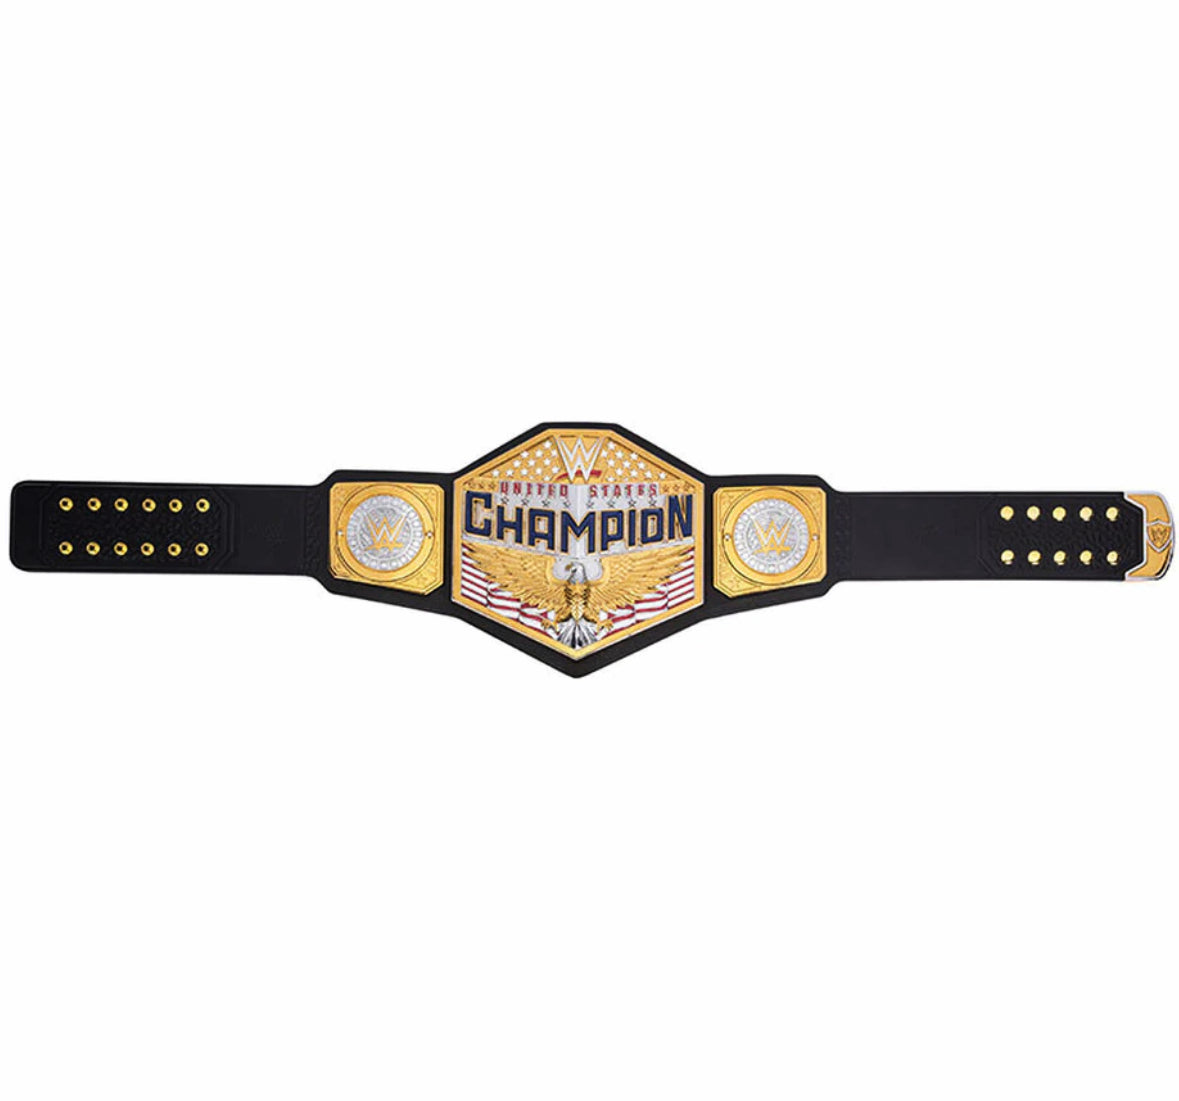 New WWE USA Championship Title Belt 2MM - United States World Heavyweight Wrestling Replica Belt - WWE Champion Belt